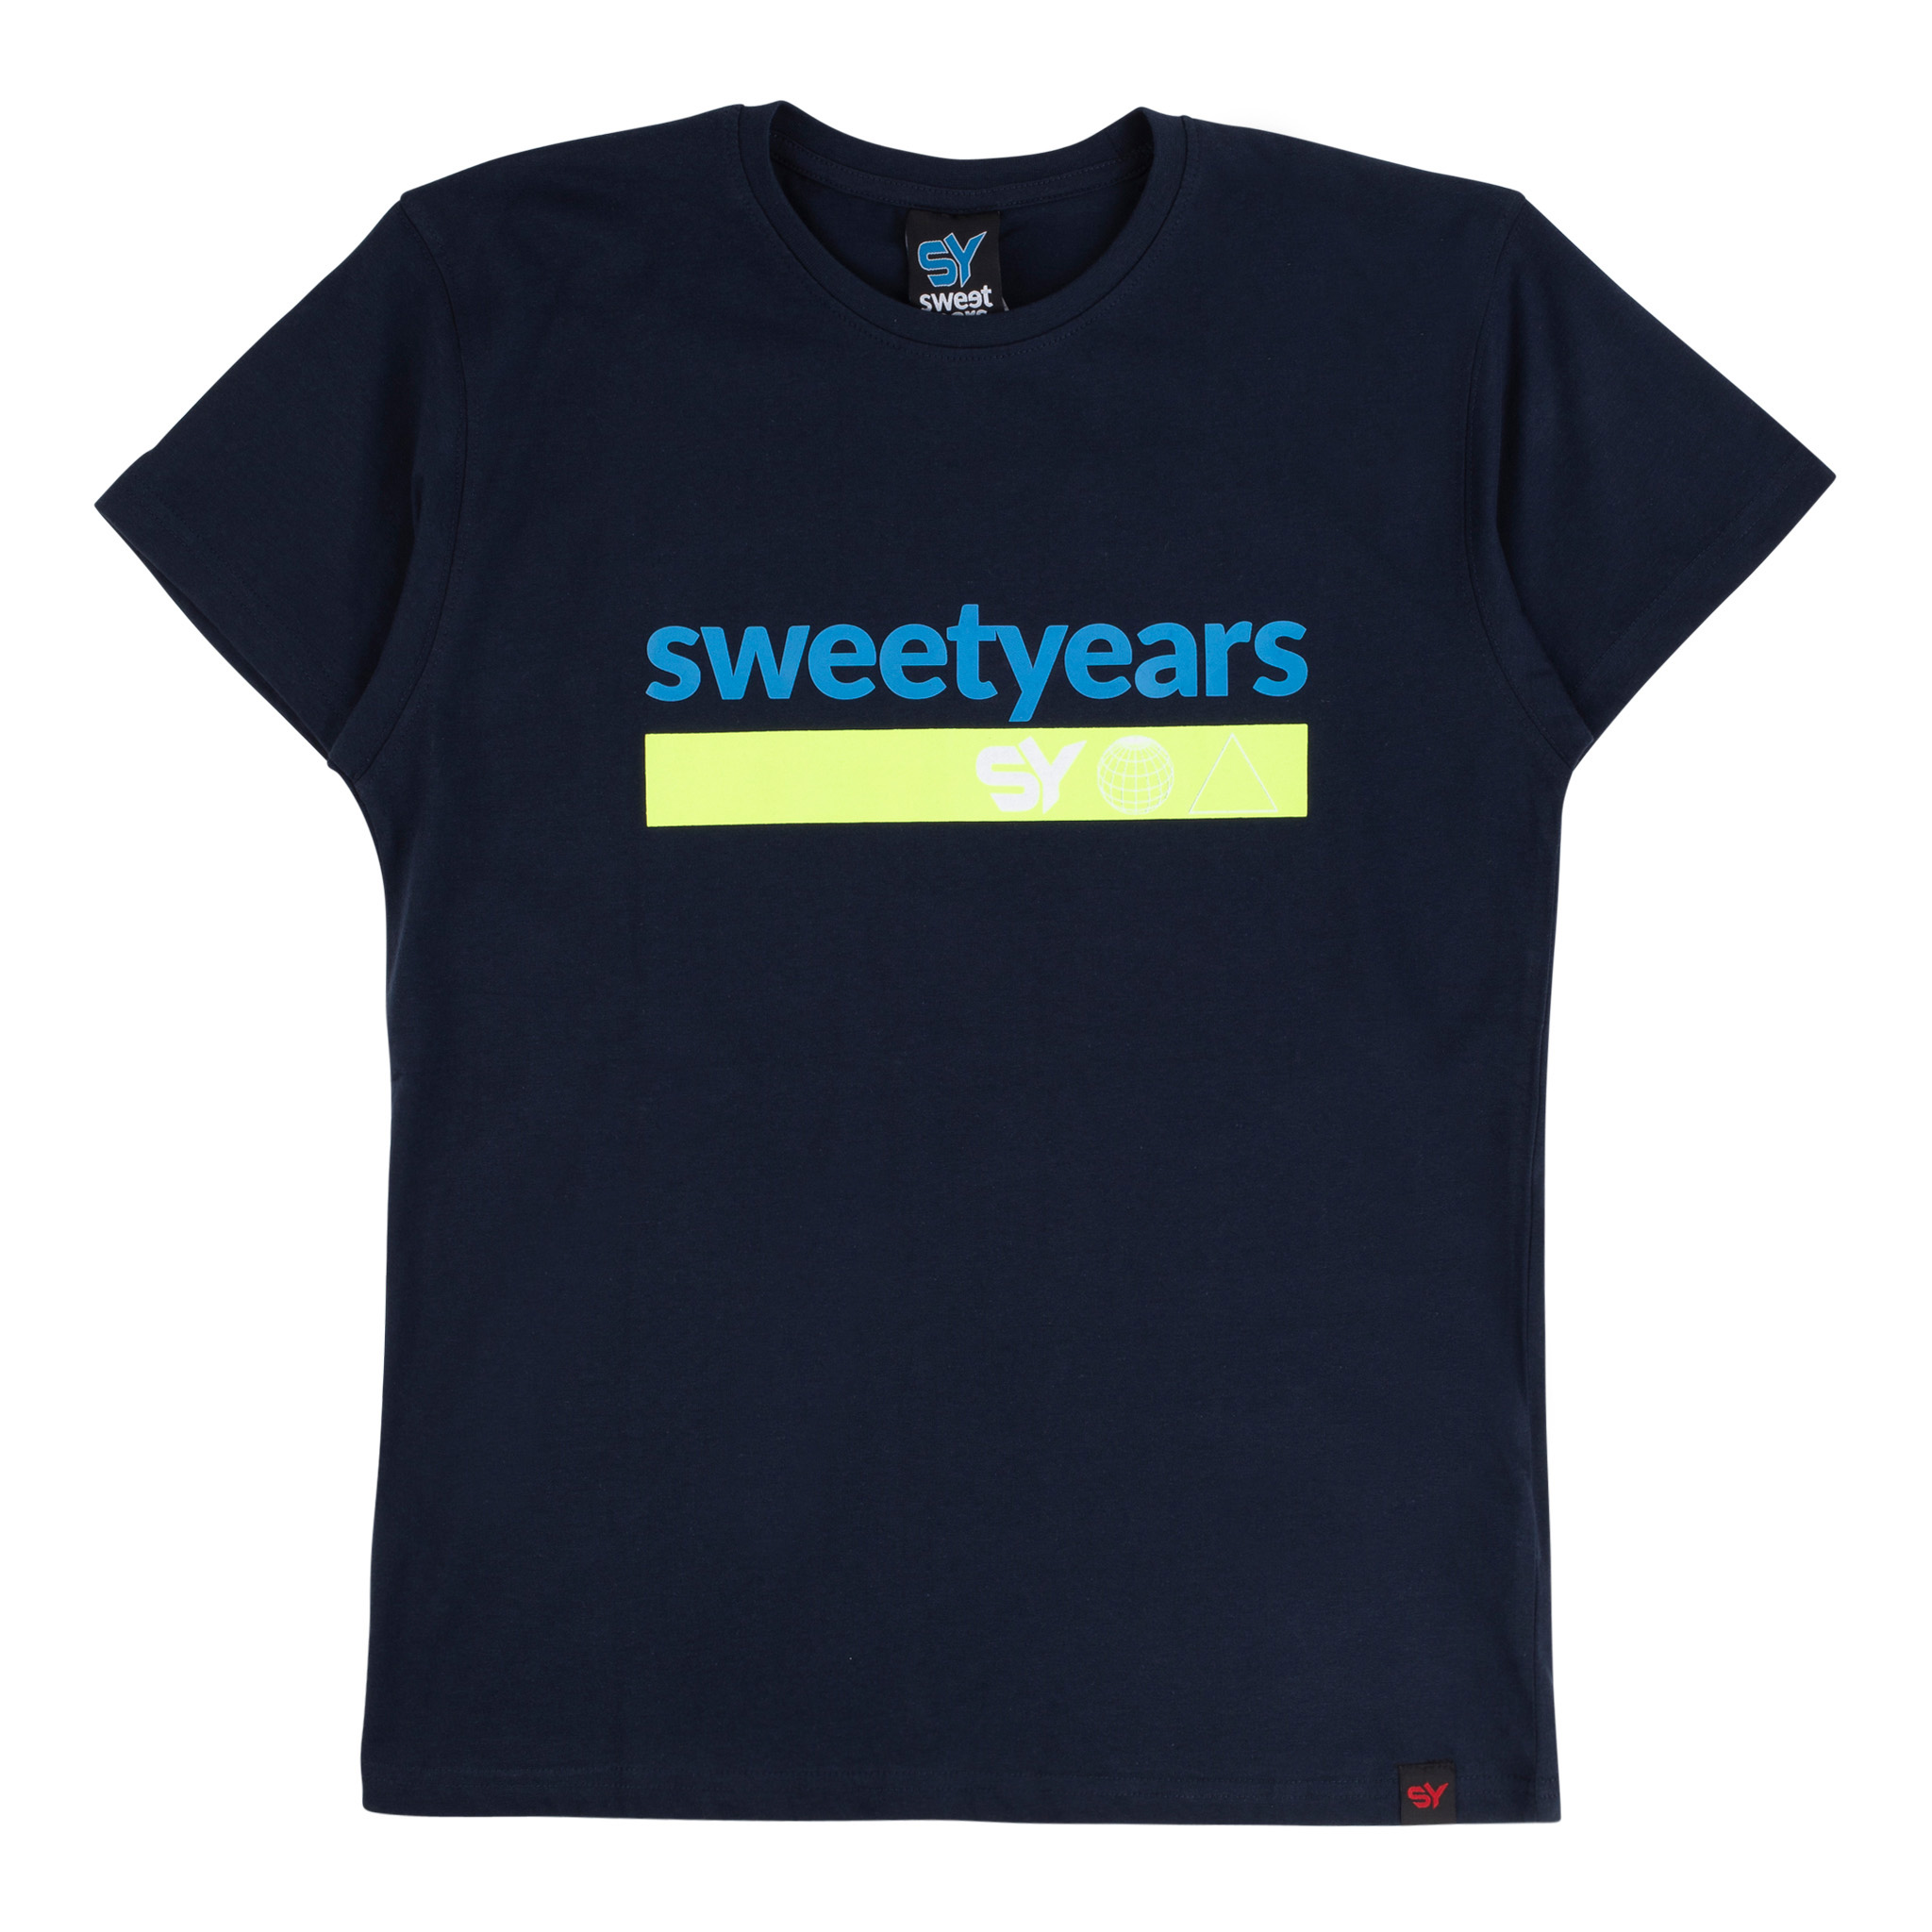 sweet years - t-shirt